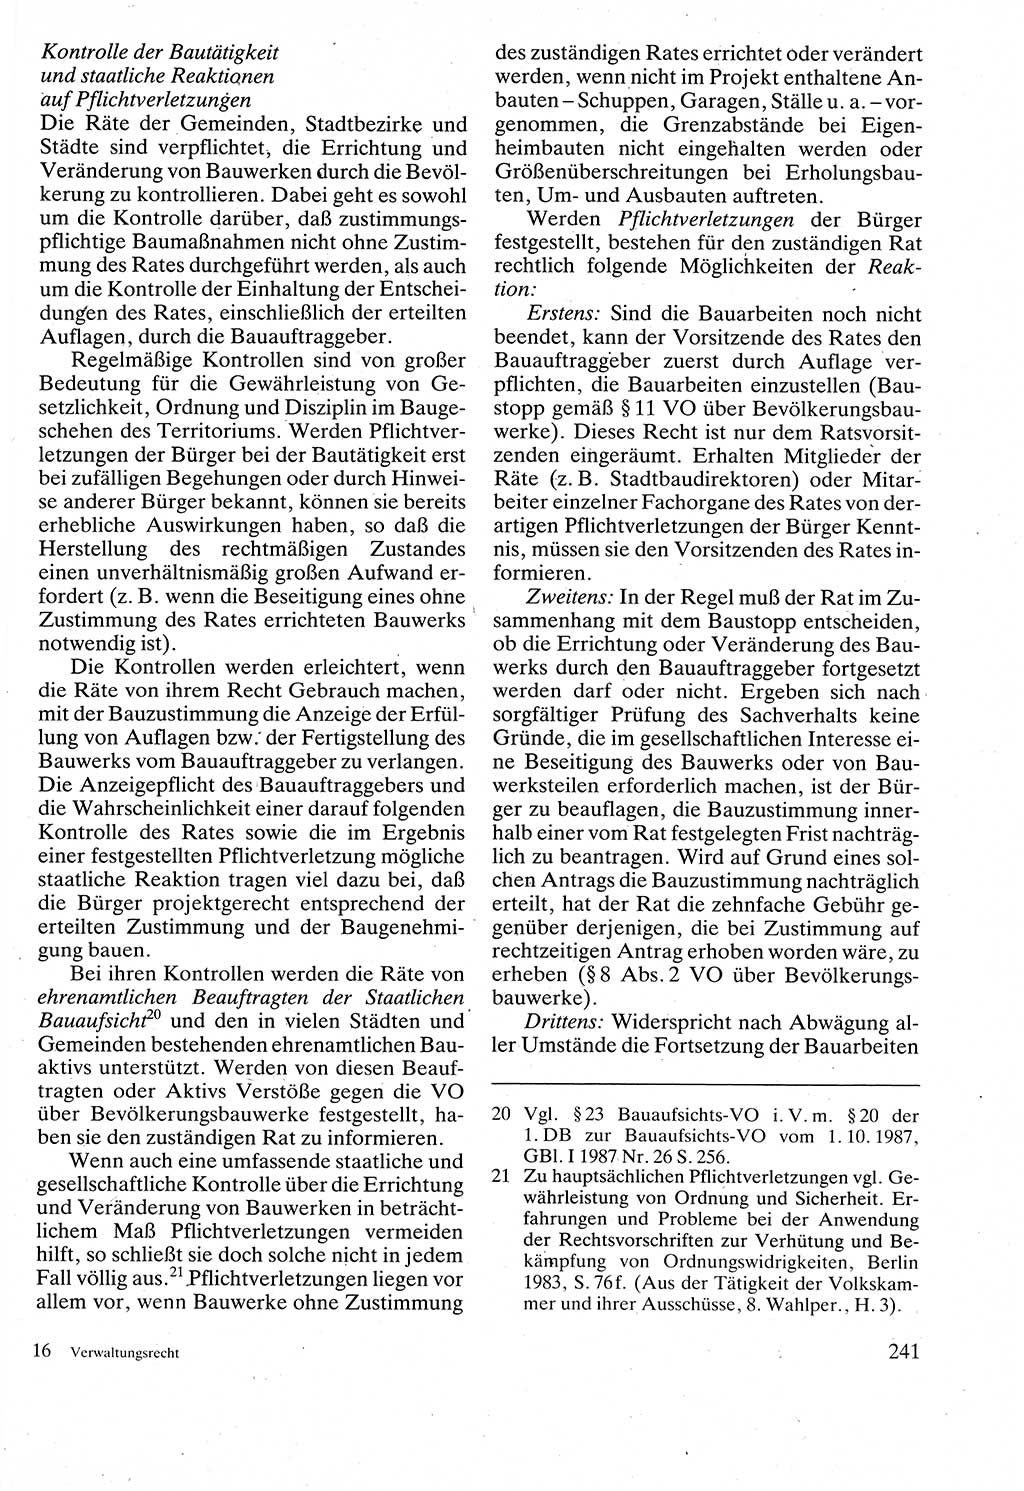 Verwaltungsrecht [Deutsche Demokratische Republik (DDR)], Lehrbuch 1988, Seite 241 (Verw.-R. DDR Lb. 1988, S. 241)